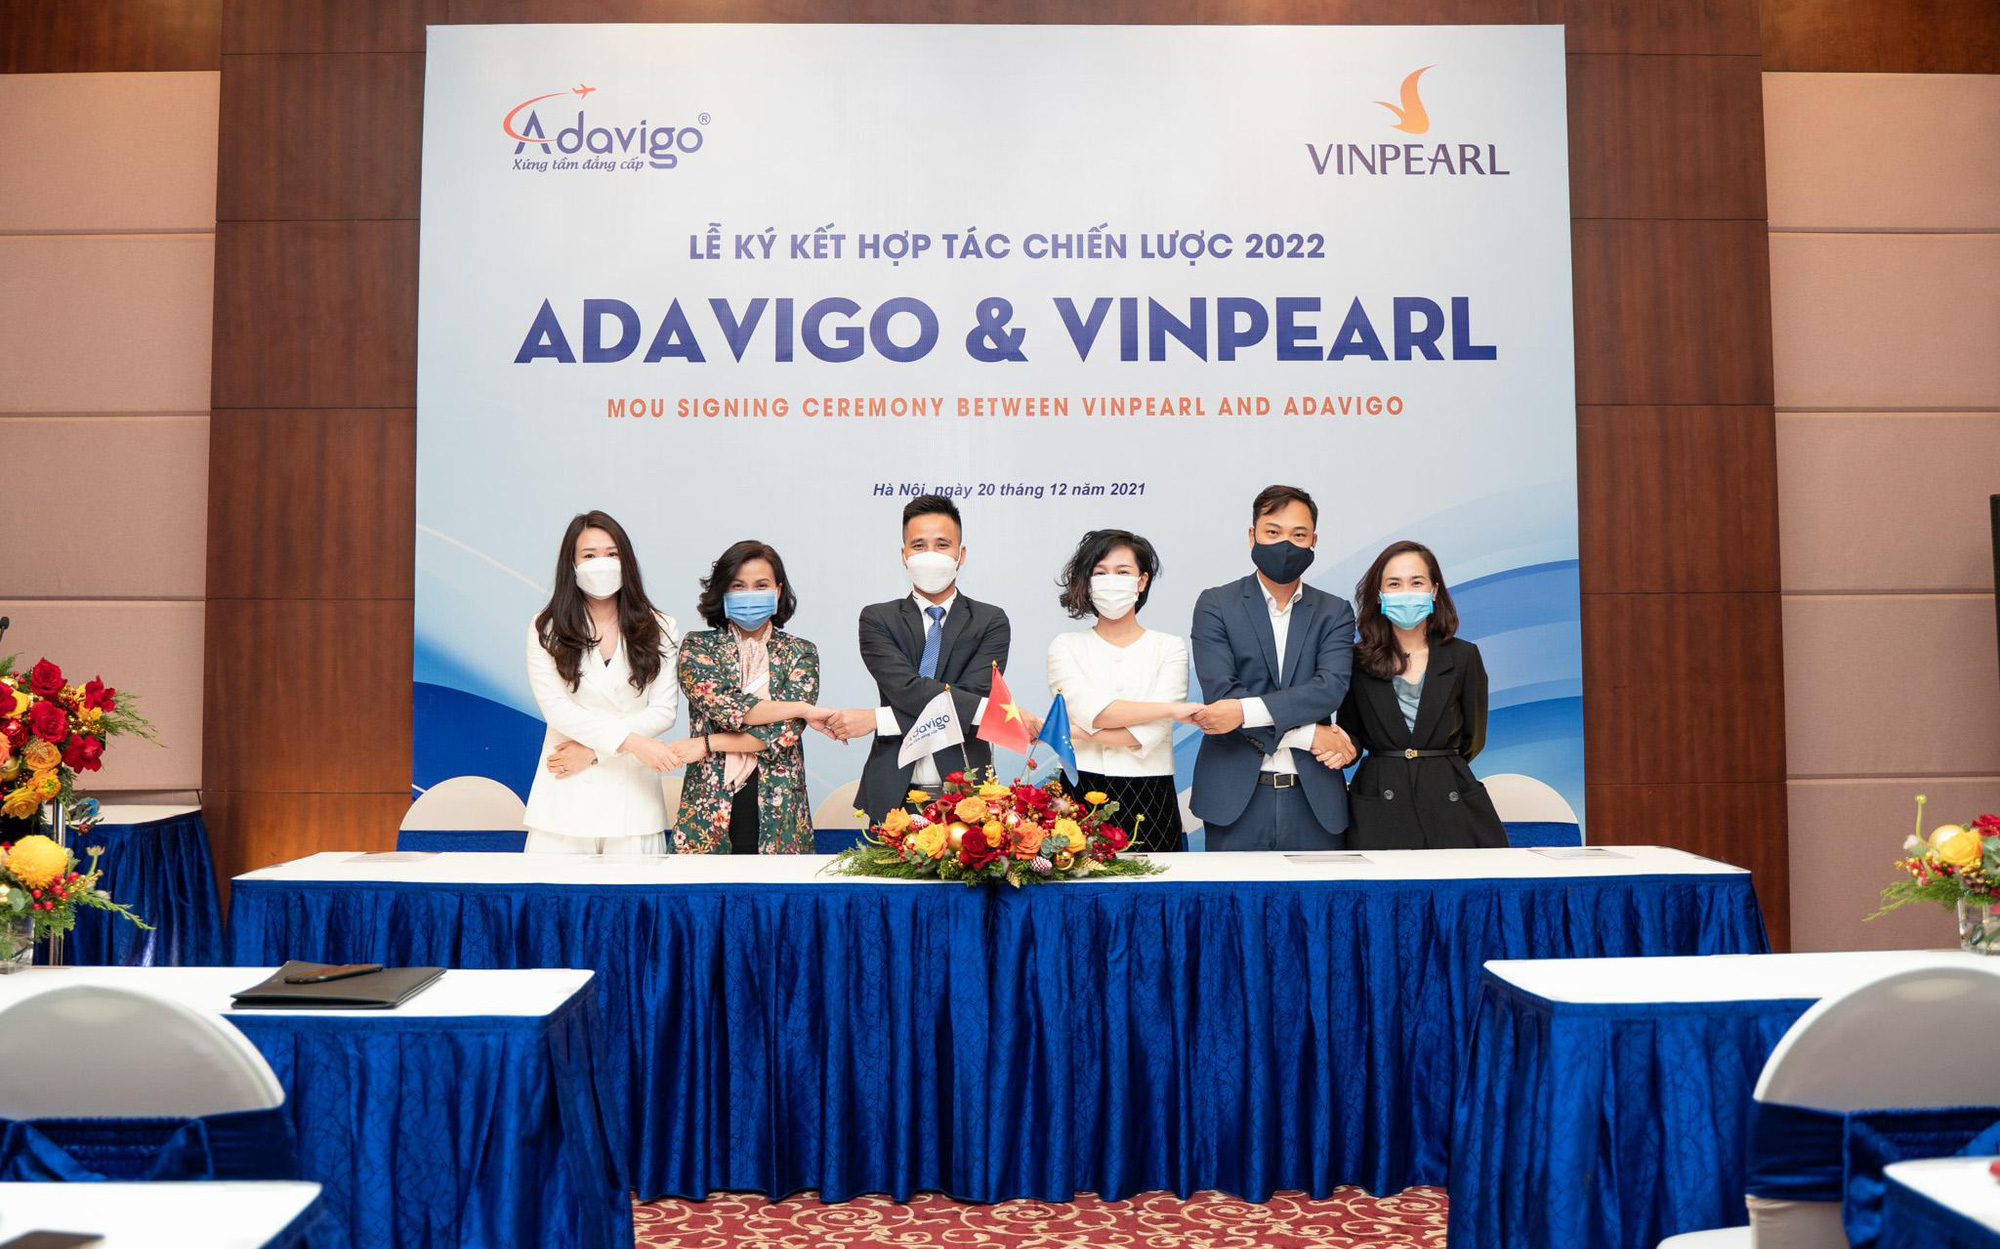 Adavigo ký kết hợp tác chiến lược cùng Vinpearl